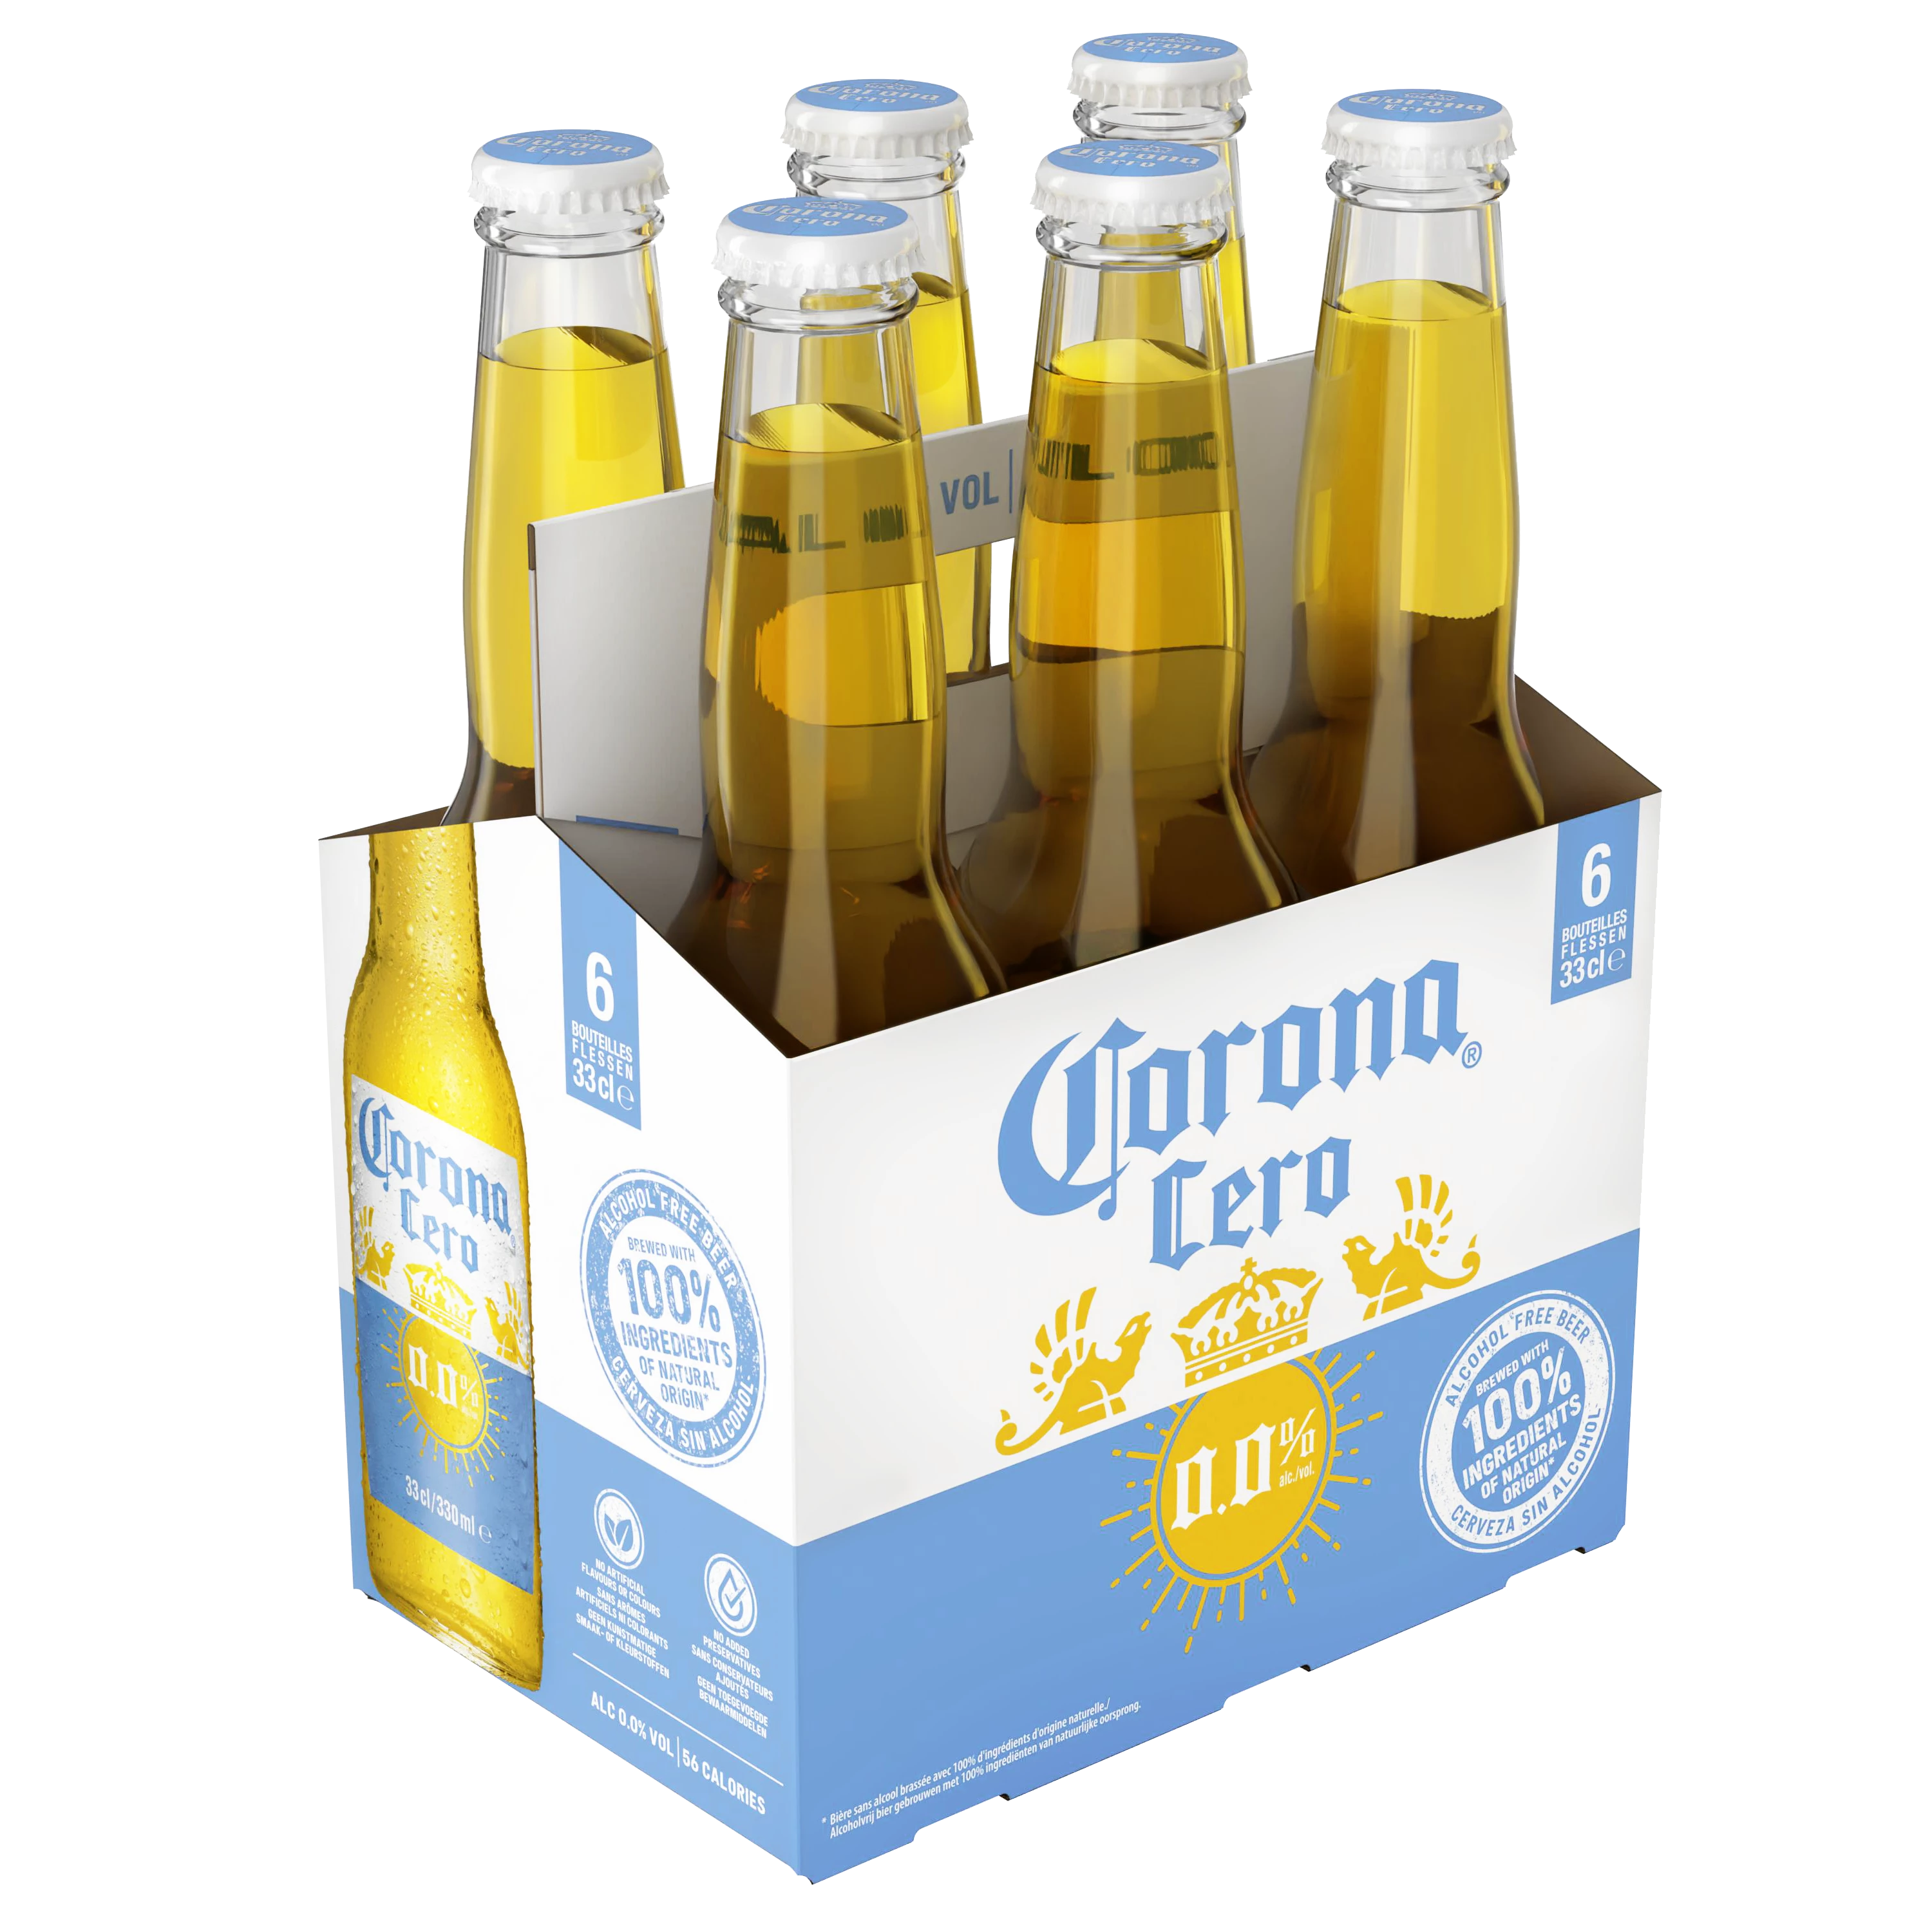 Aromatisiertes alkoholfreies Bier, 6x33cl - CORONA